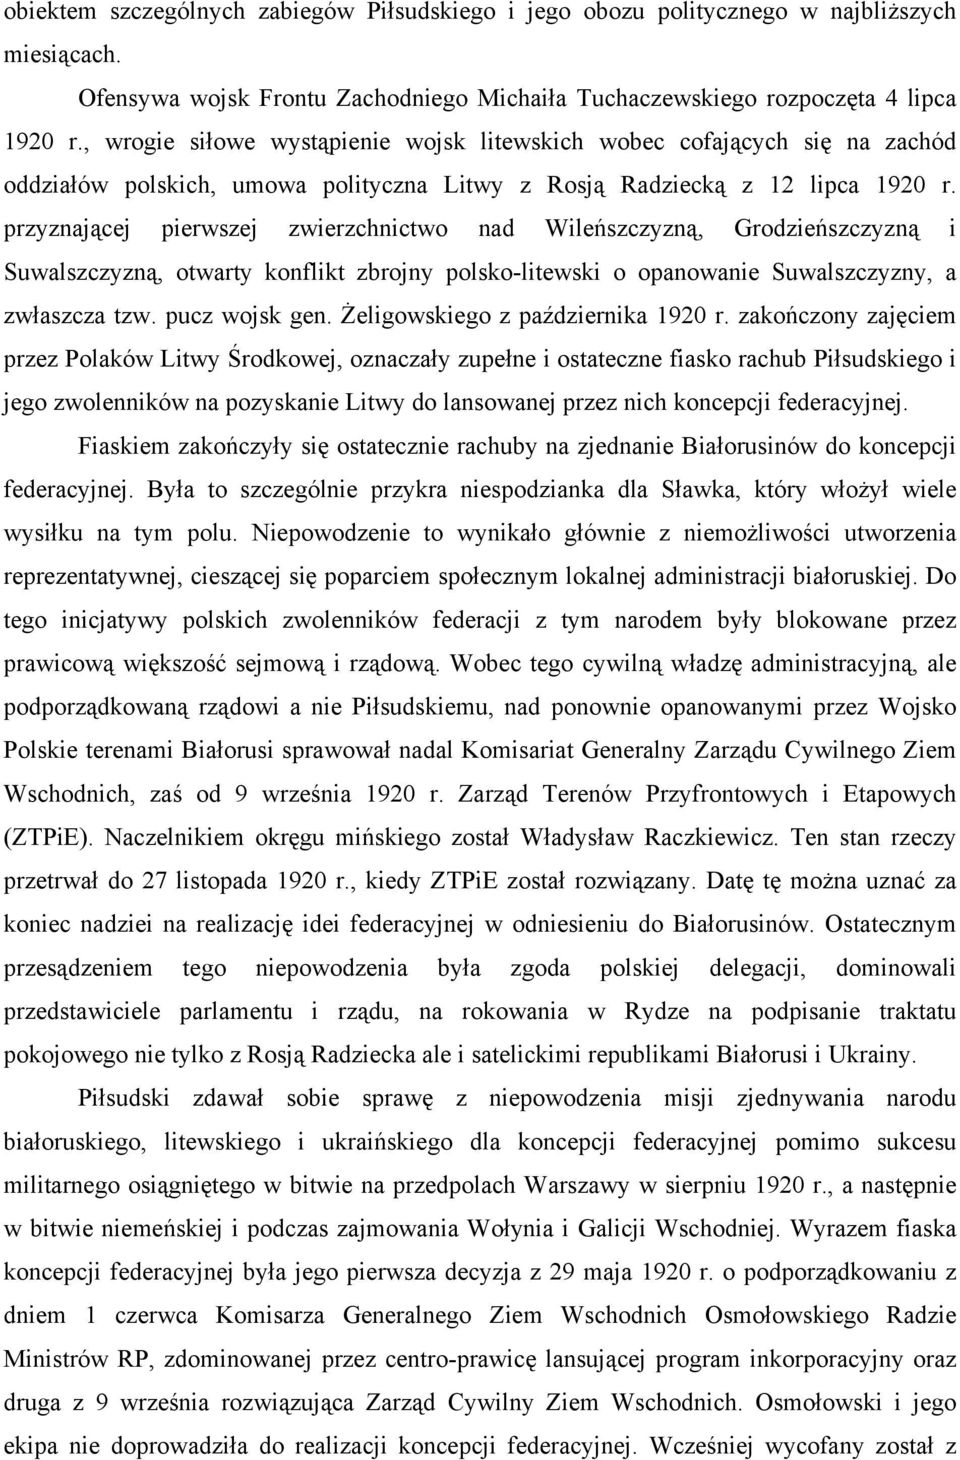 przyznającej pierwszej zwierzchnictwo nad Wileńszczyzną, Grodzieńszczyzną i Suwalszczyzną, otwarty konflikt zbrojny polsko-litewski o opanowanie Suwalszczyzny, a zwłaszcza tzw. pucz wojsk gen.